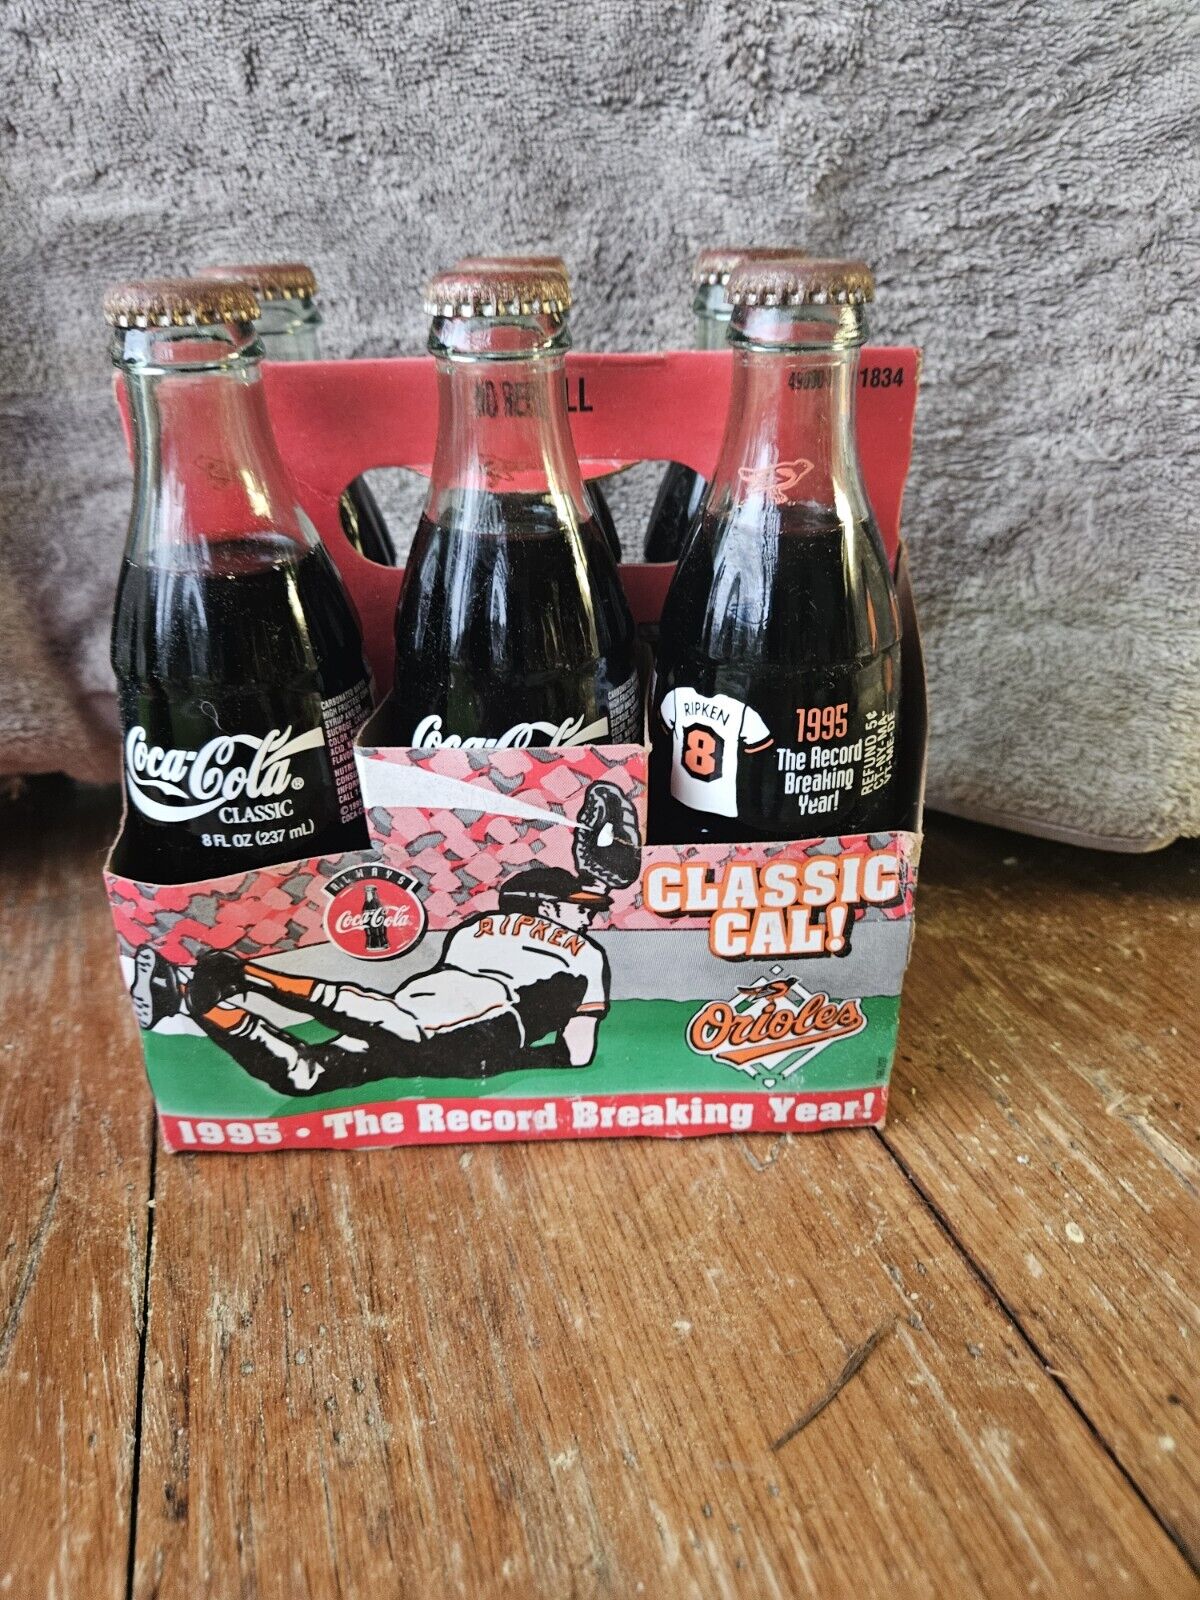 Coca-Cola Cal Ripken Jr Classic Cal 1995 Record Breaking Year 6-Pack Bottles